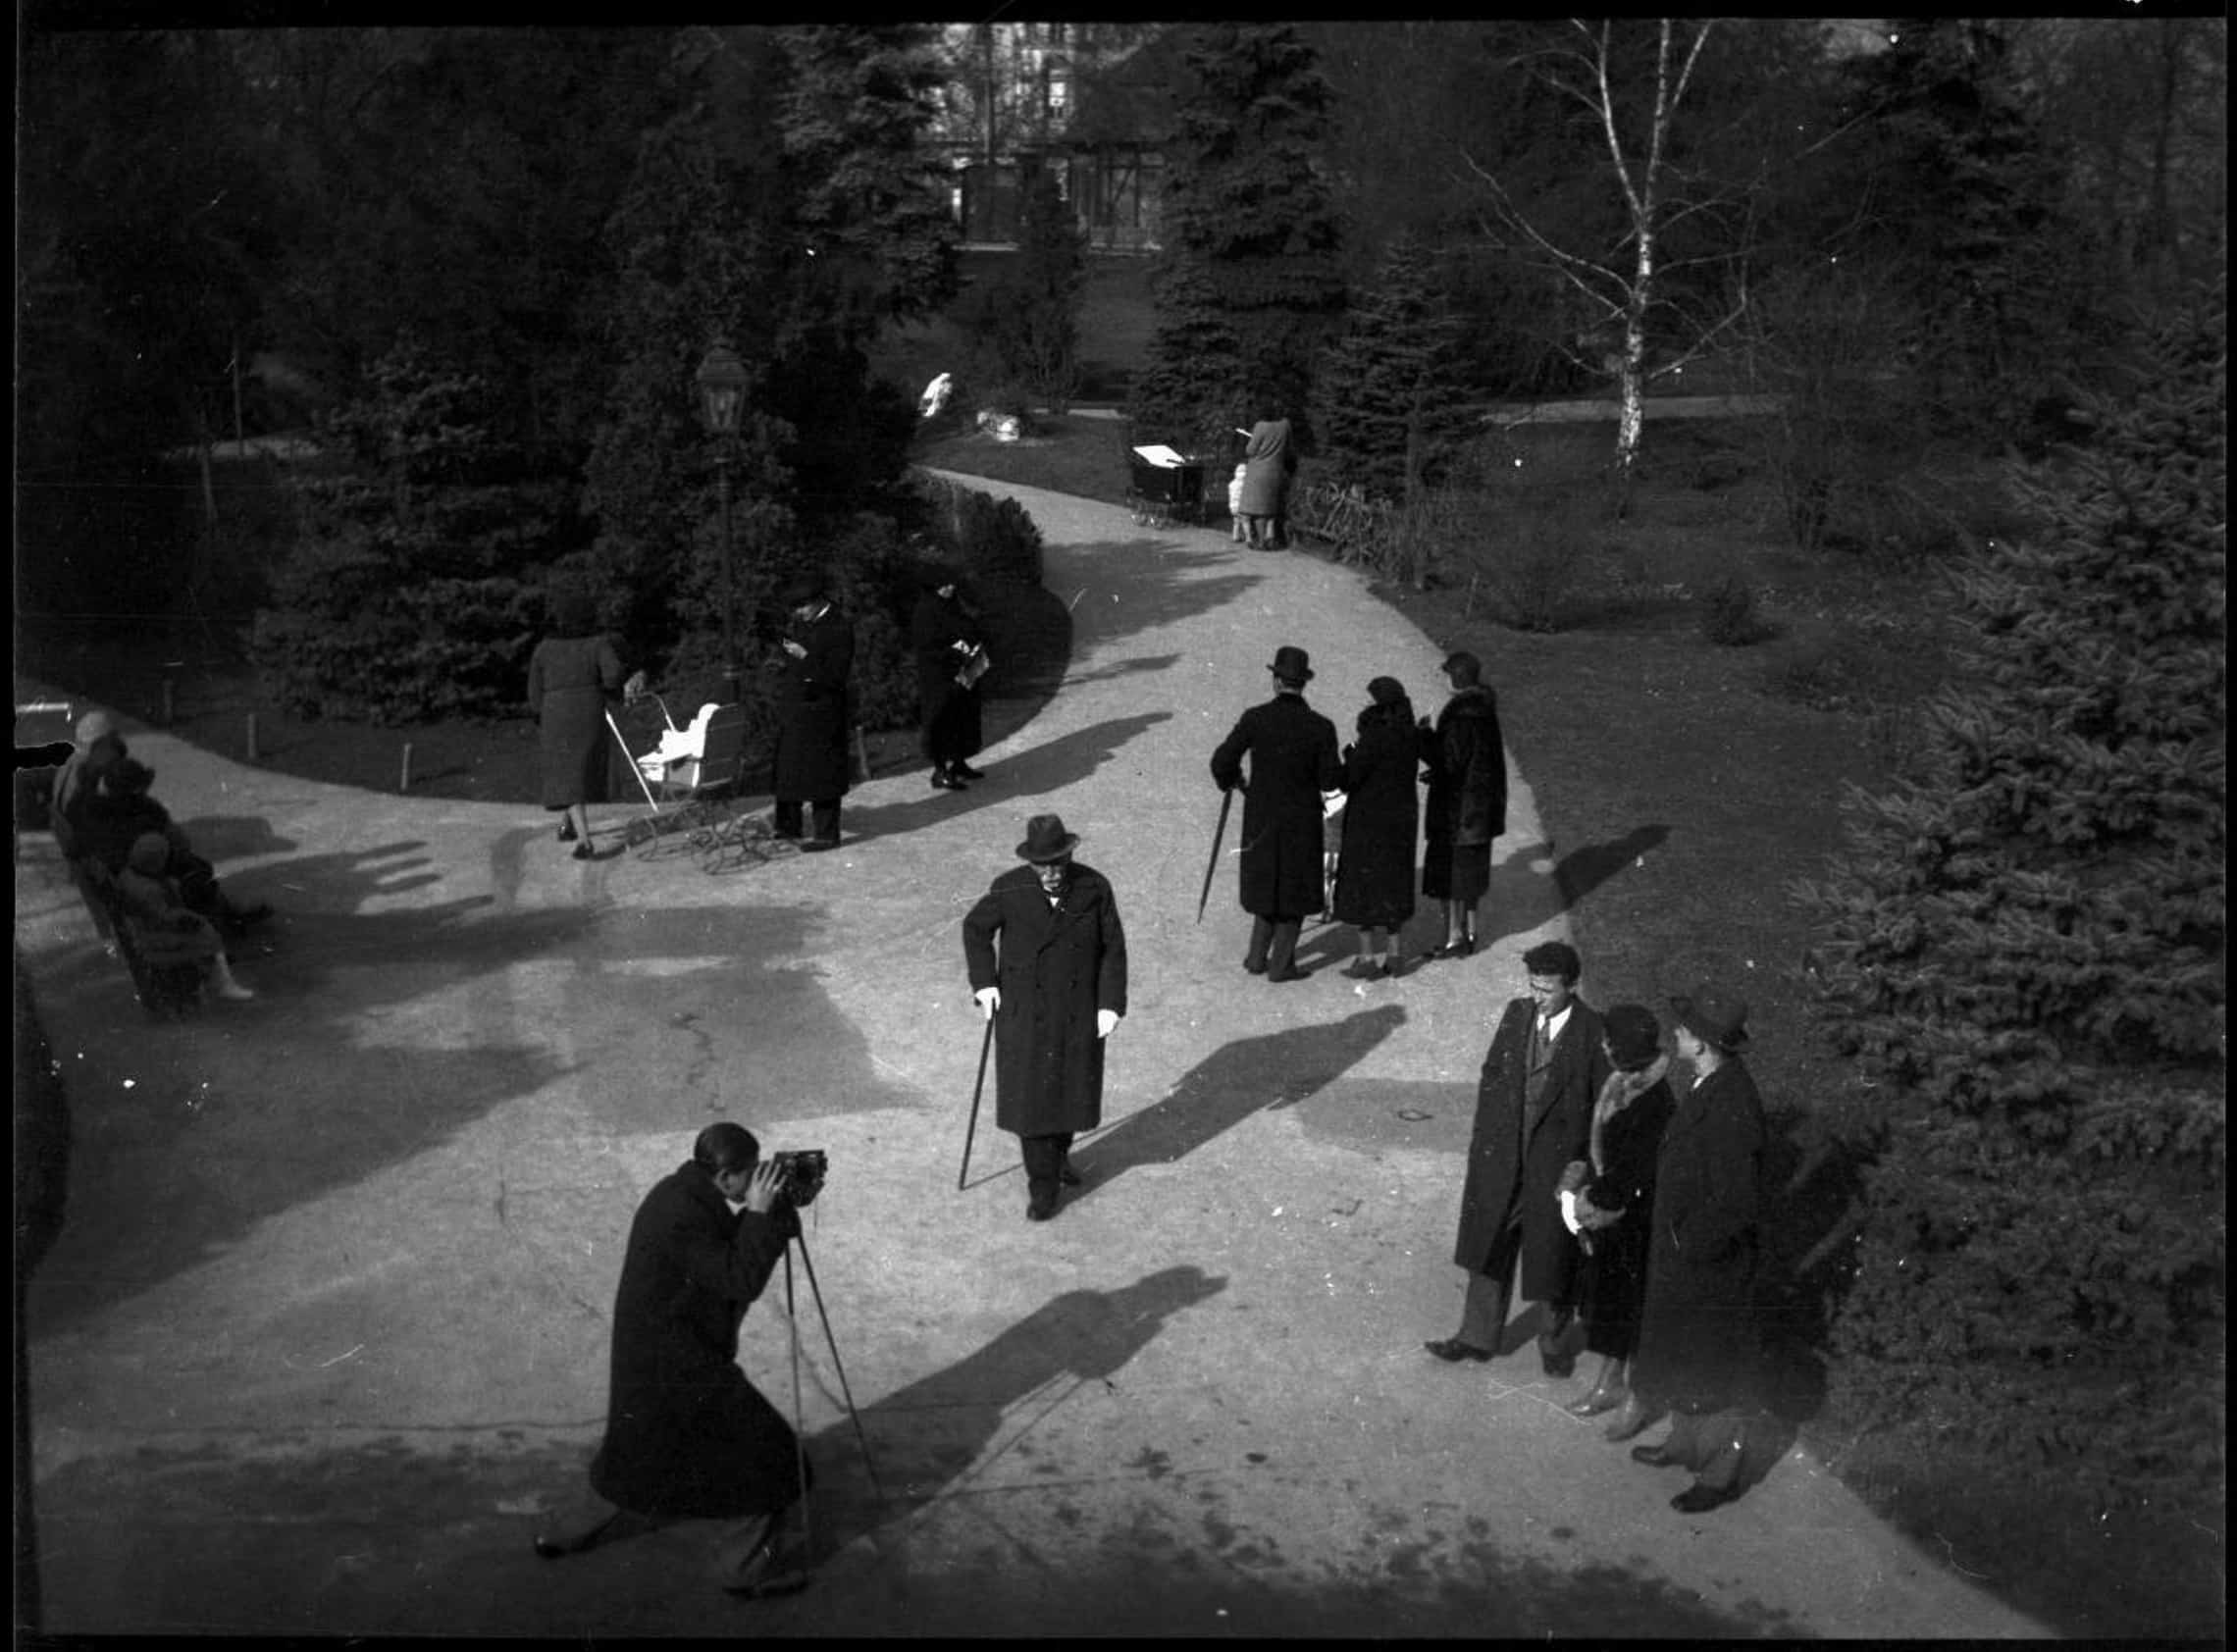 8a. Imre Kinszki, <em>Fénykép készül a parkban, sétáló emberek</em> (« Une photographie se prépare dans le parc, promeneurs »), 1935 © FSZEK